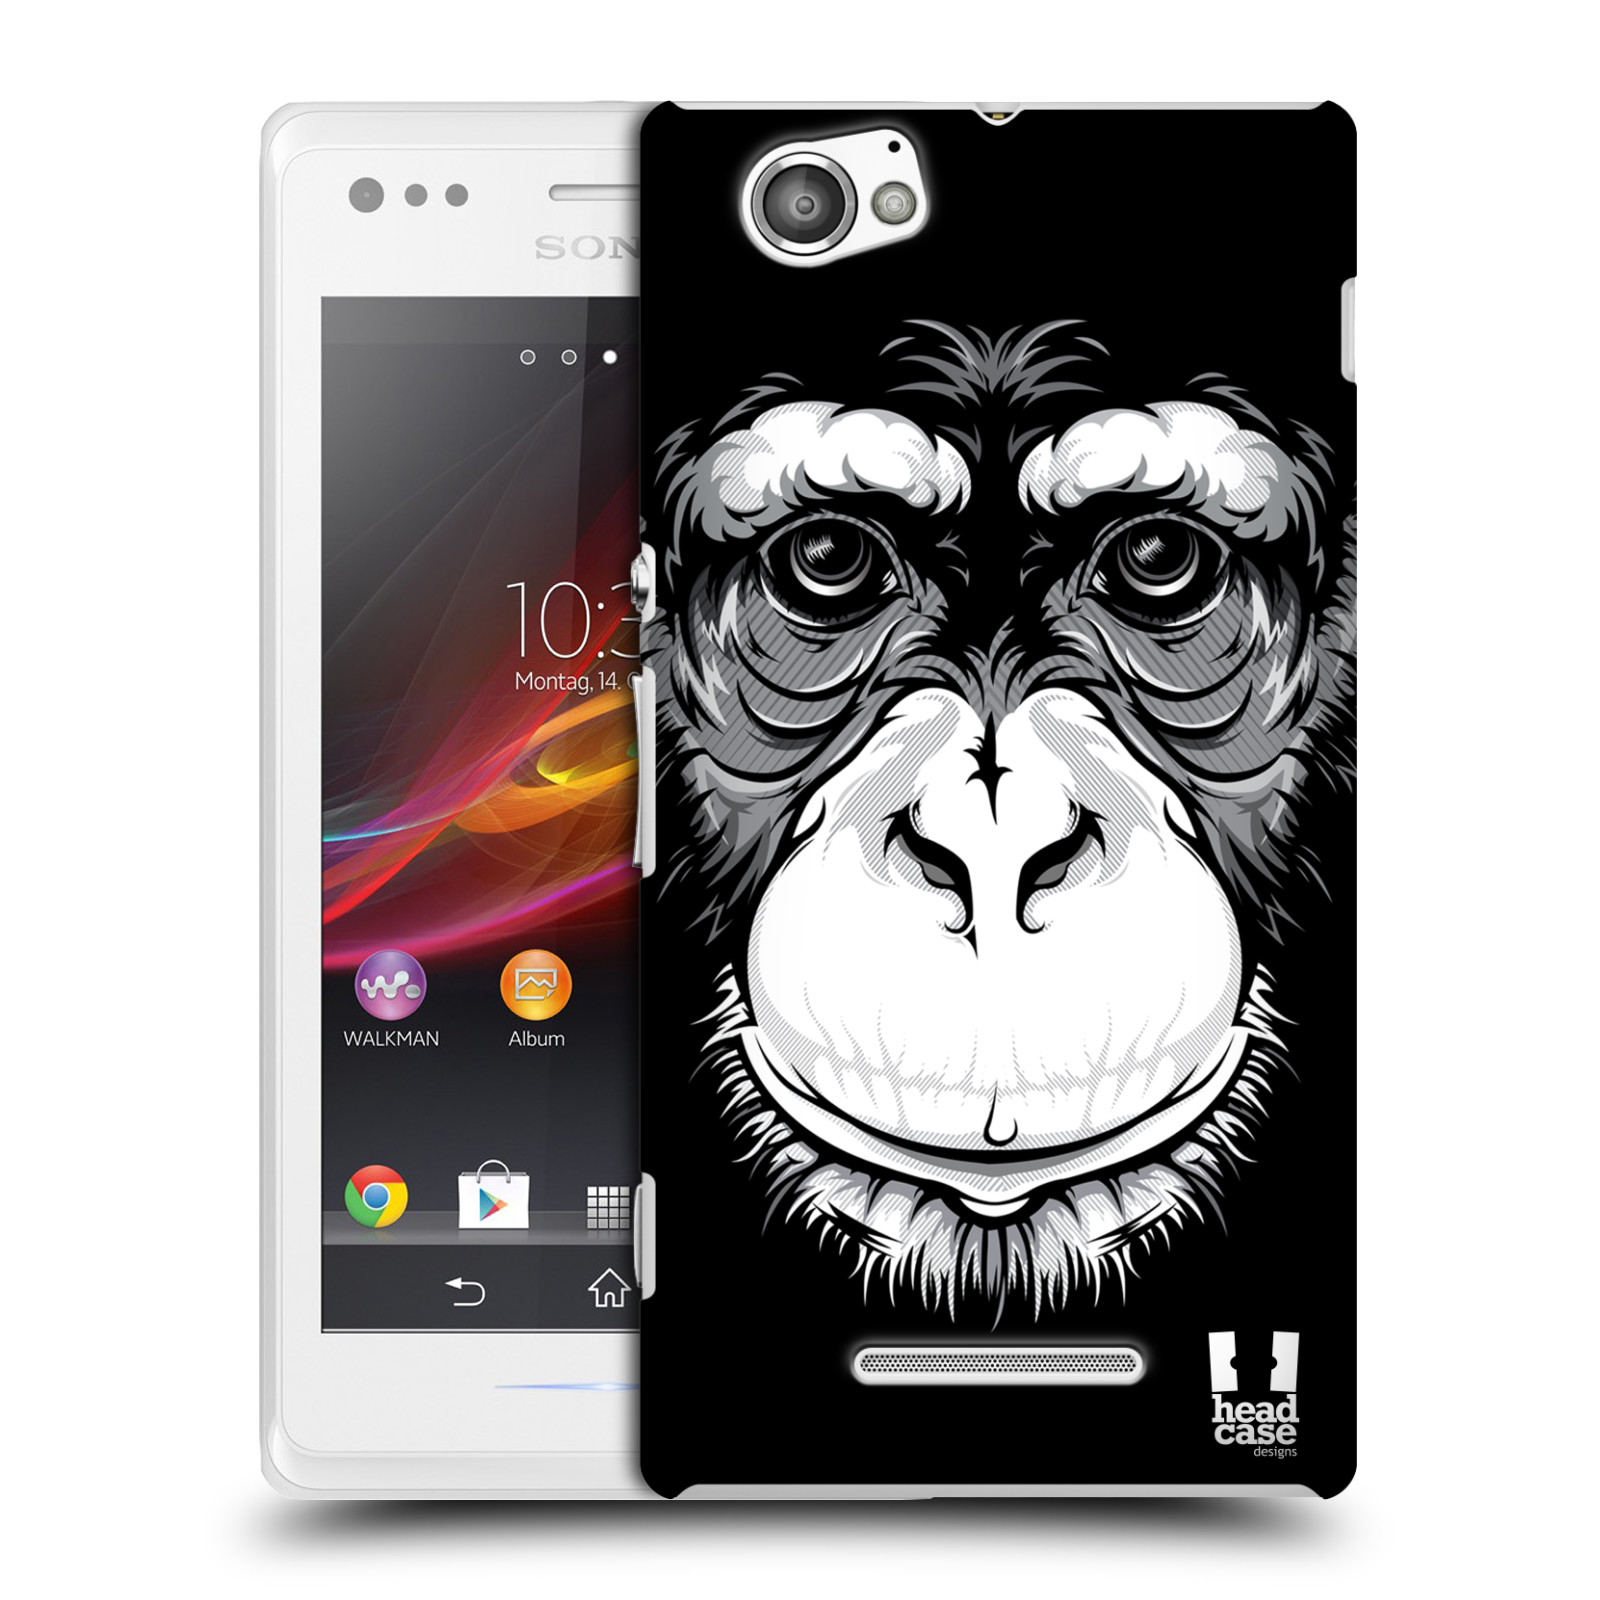 HEAD CASE plastový obal na mobil Sony Xperia M vzor Zvíře kreslená tvář šimpanz